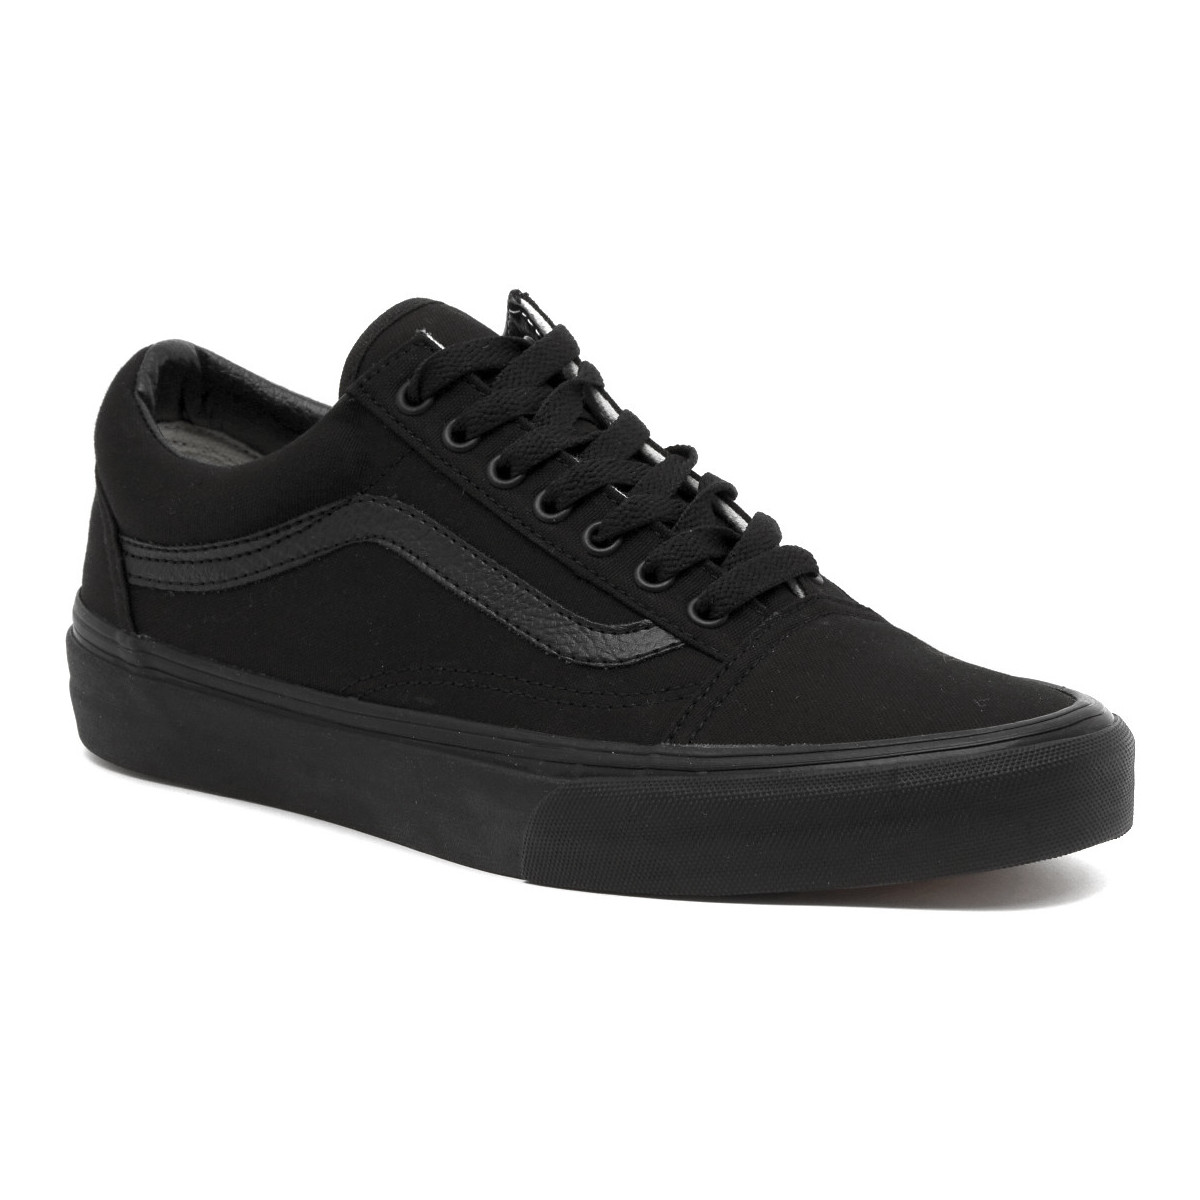 Vans Old Skool Sneakers Unisex - Black/Black